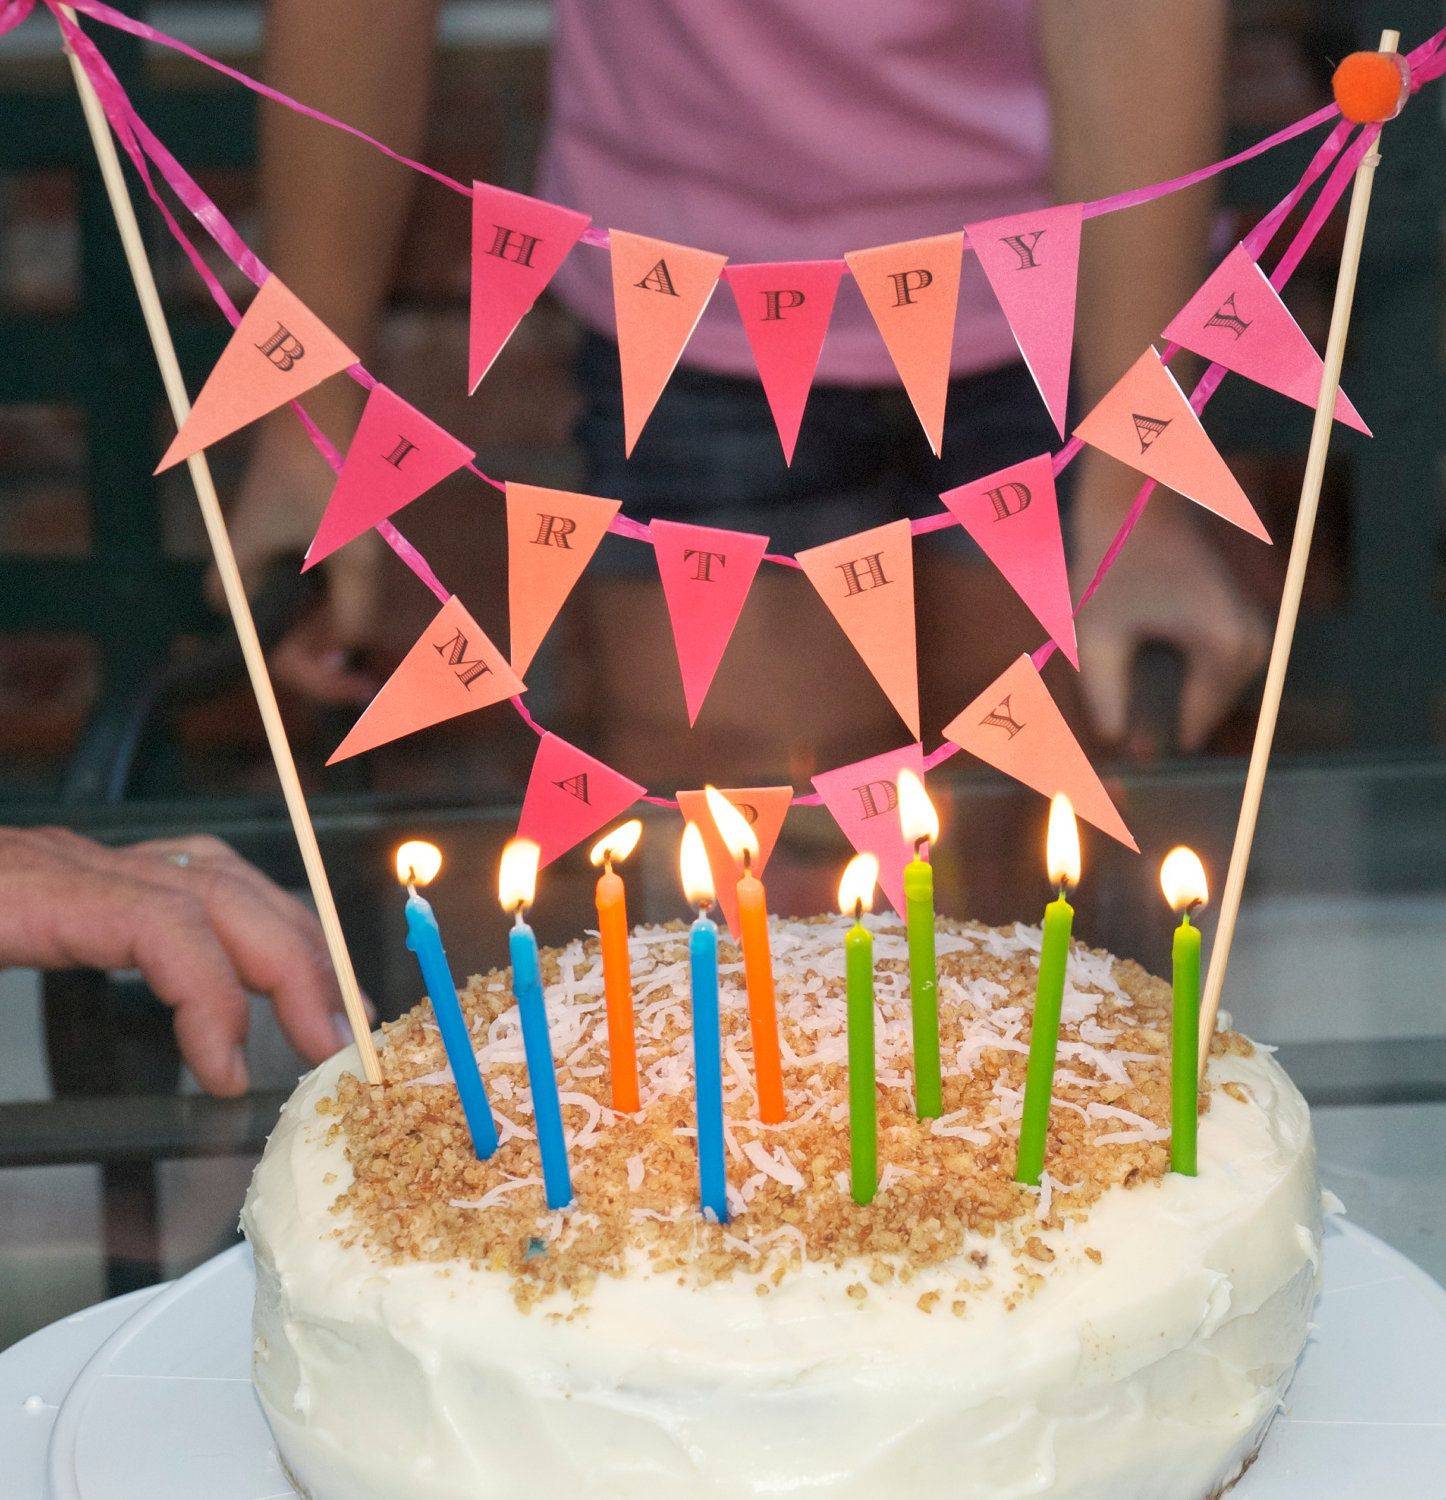 10 способов необычно провести детский день рождения